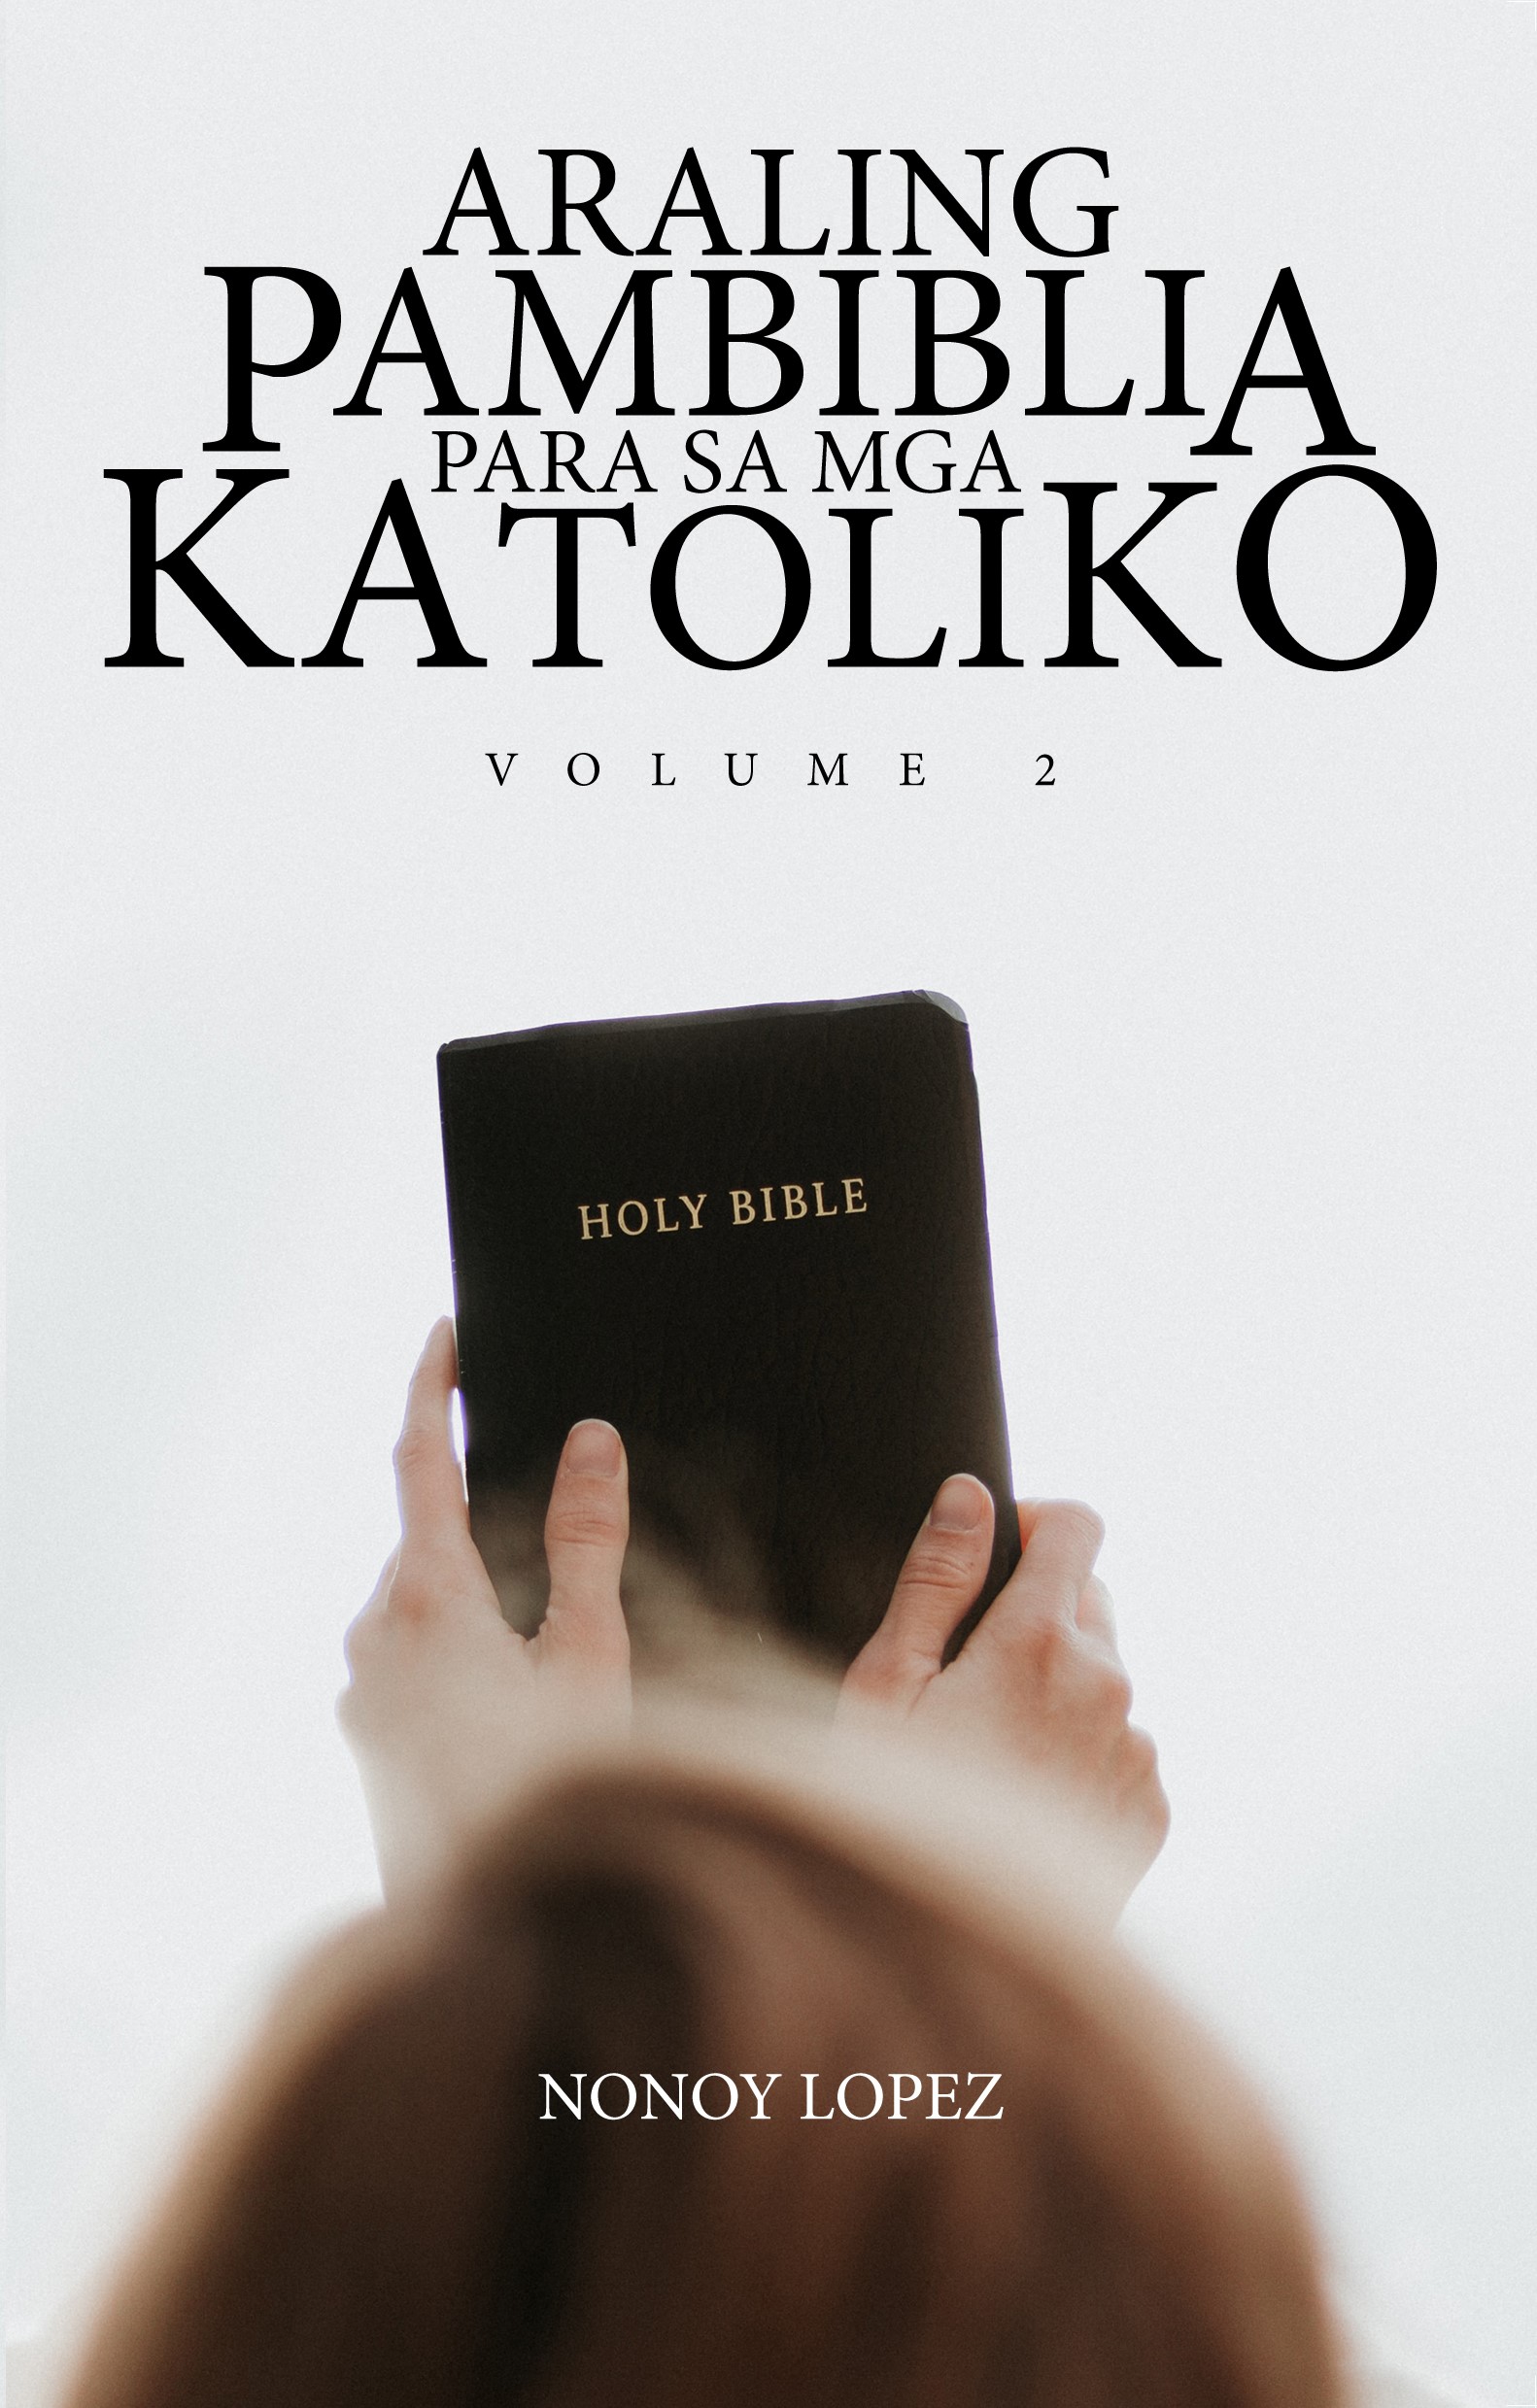 Araling Pambiblia para sa mga Katoliko Volume 2